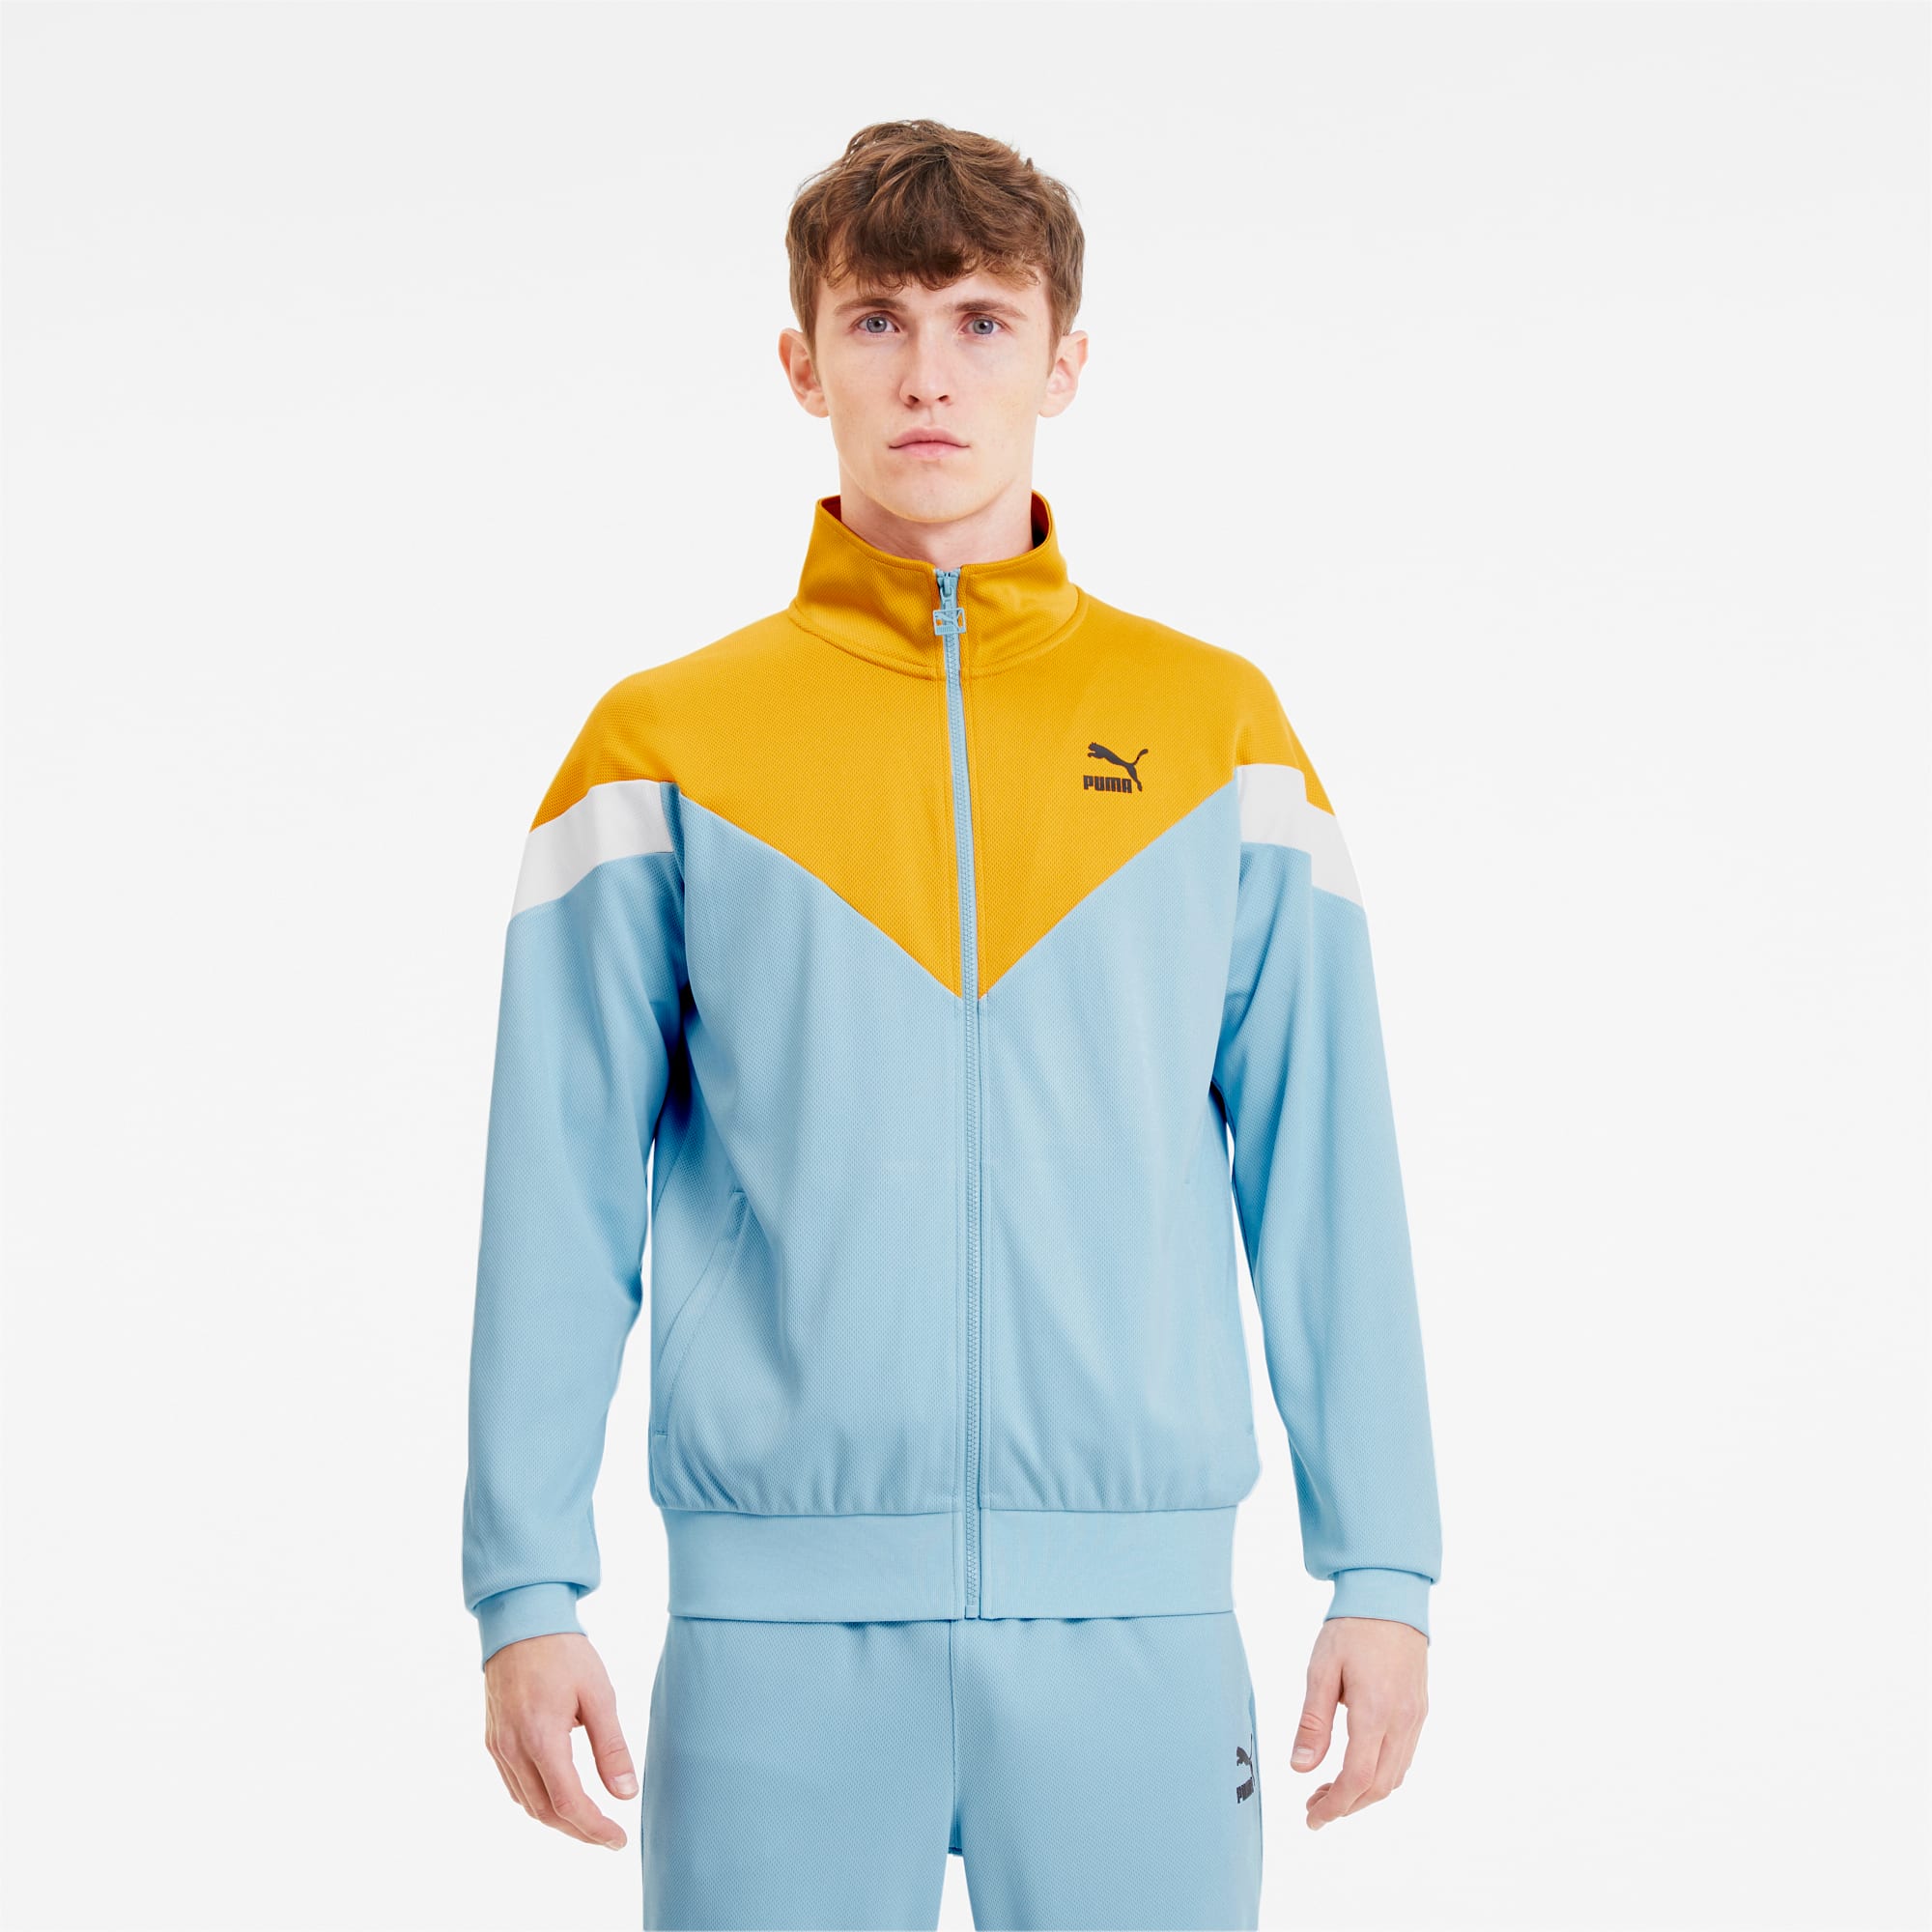 puma iconic mcs track jacket